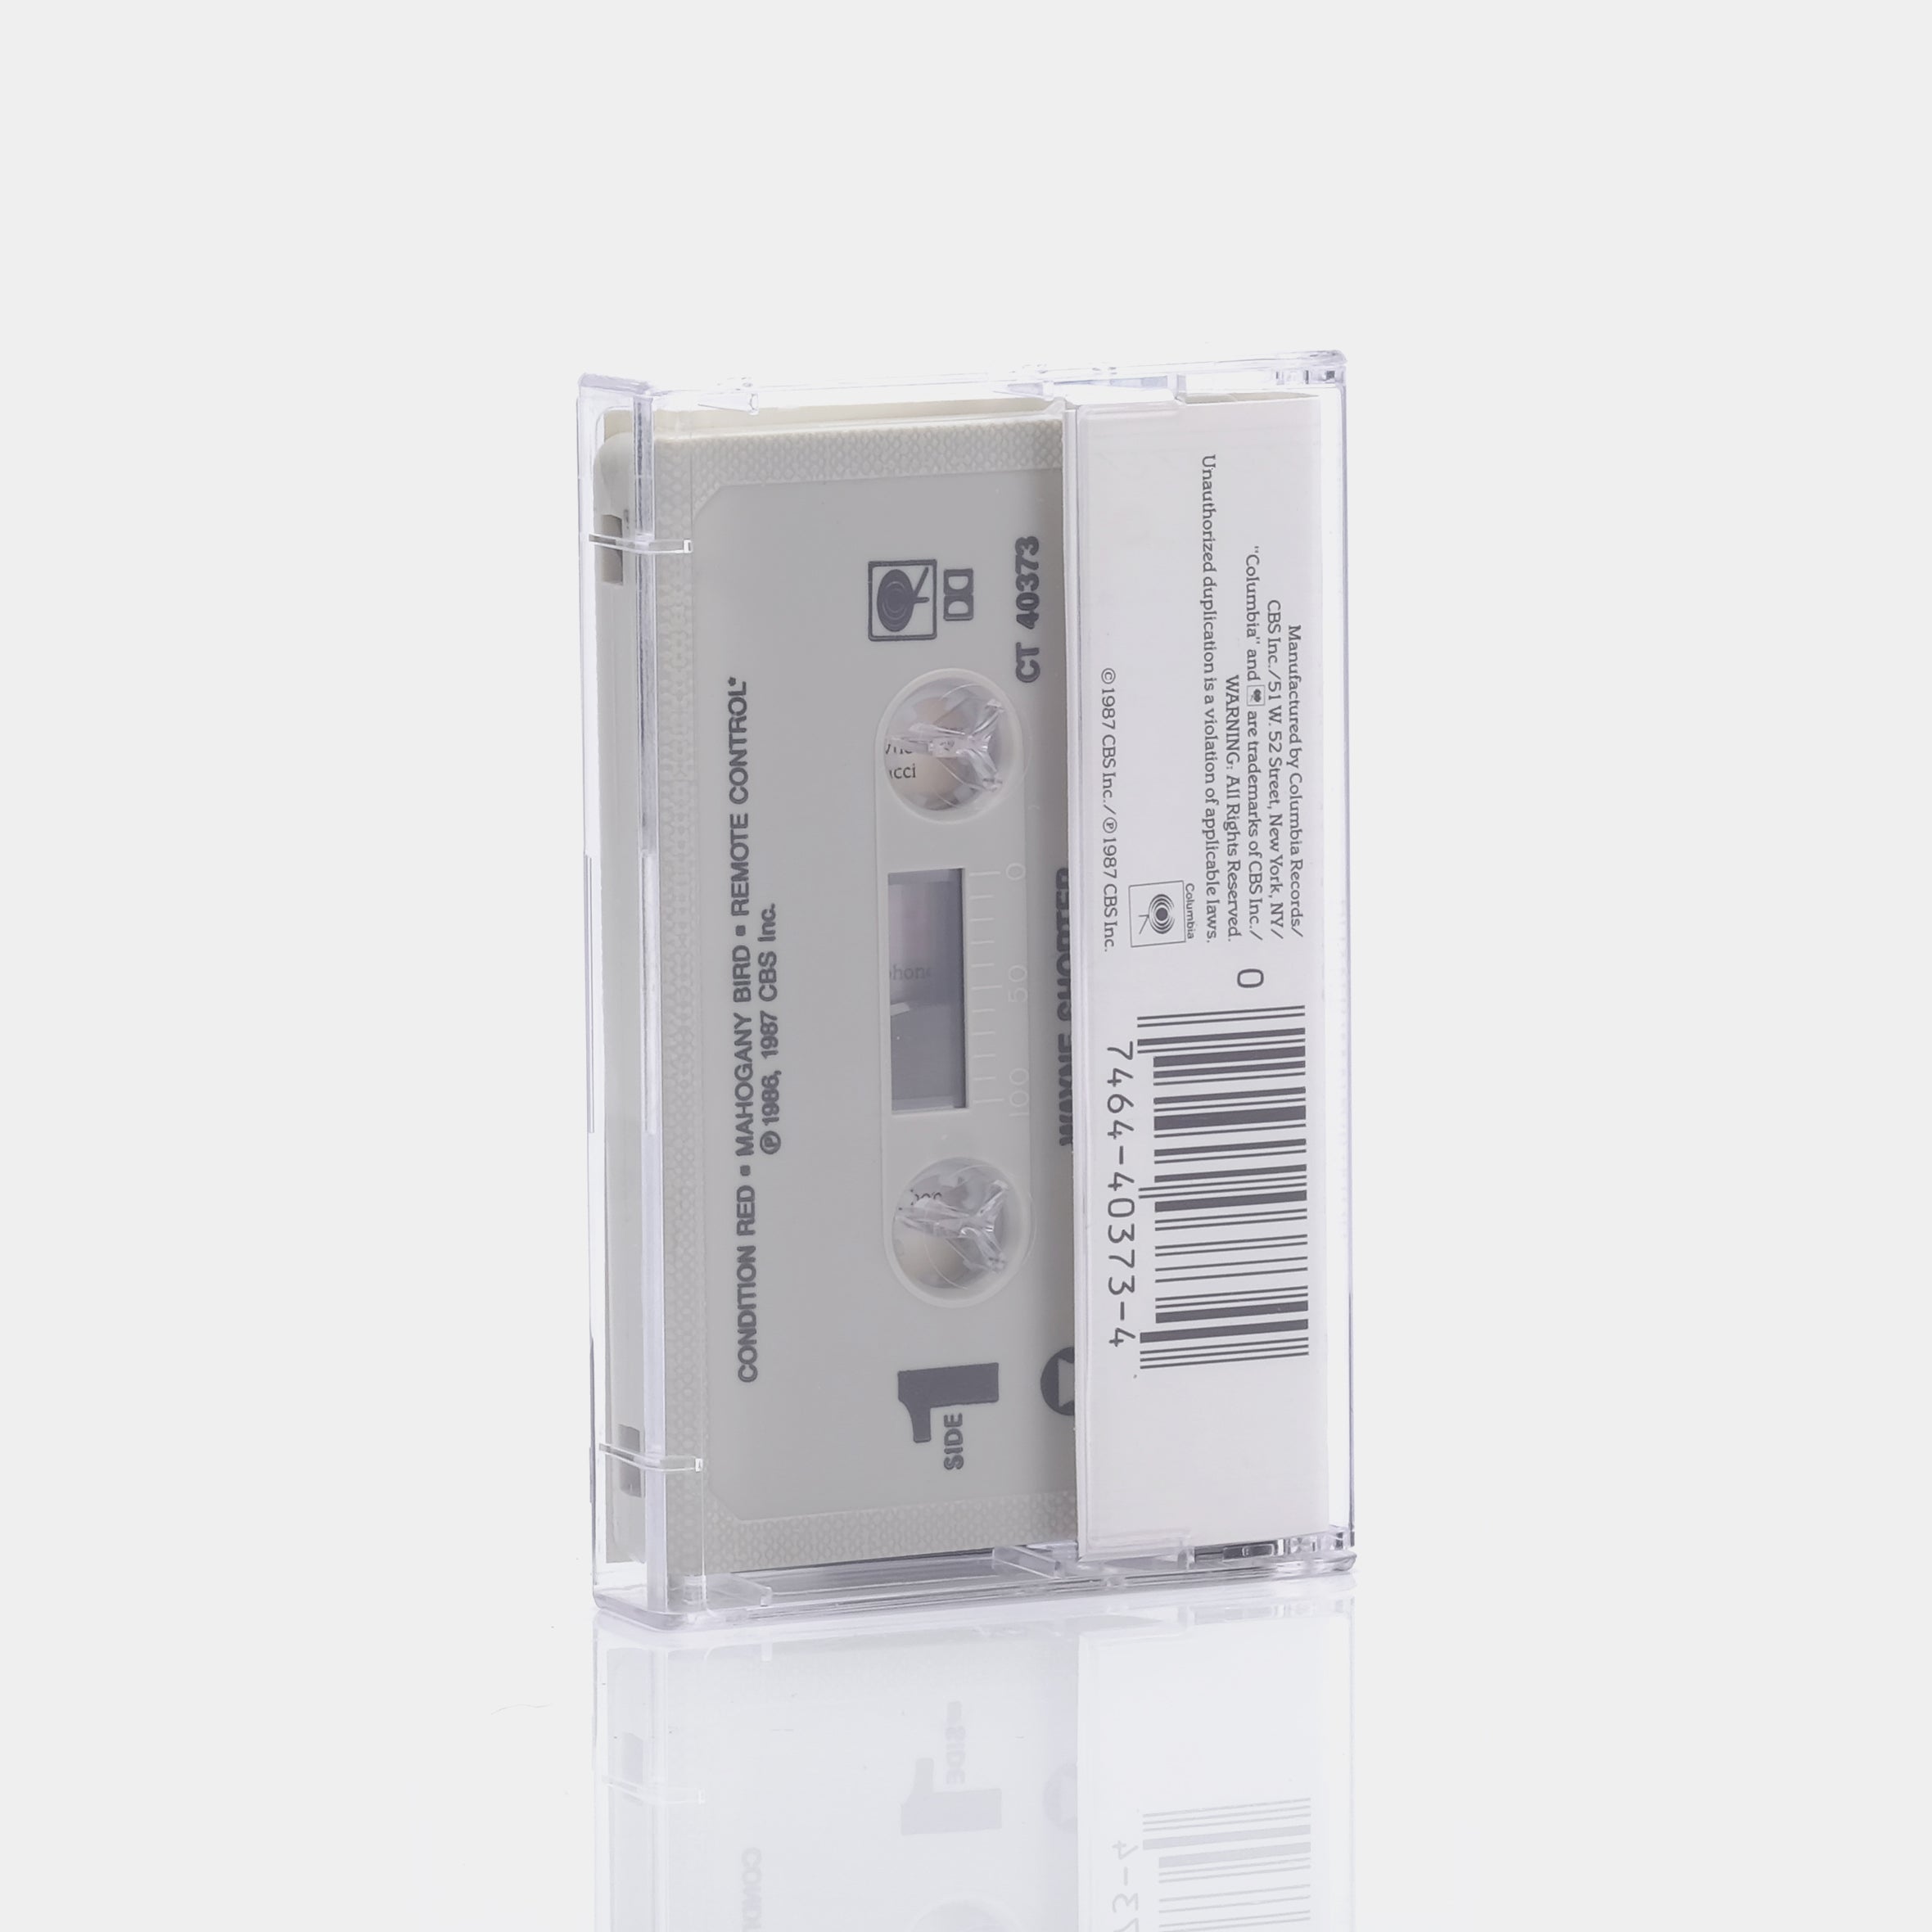 Wayne Shorter - Phantom Navigator Cassette Tape